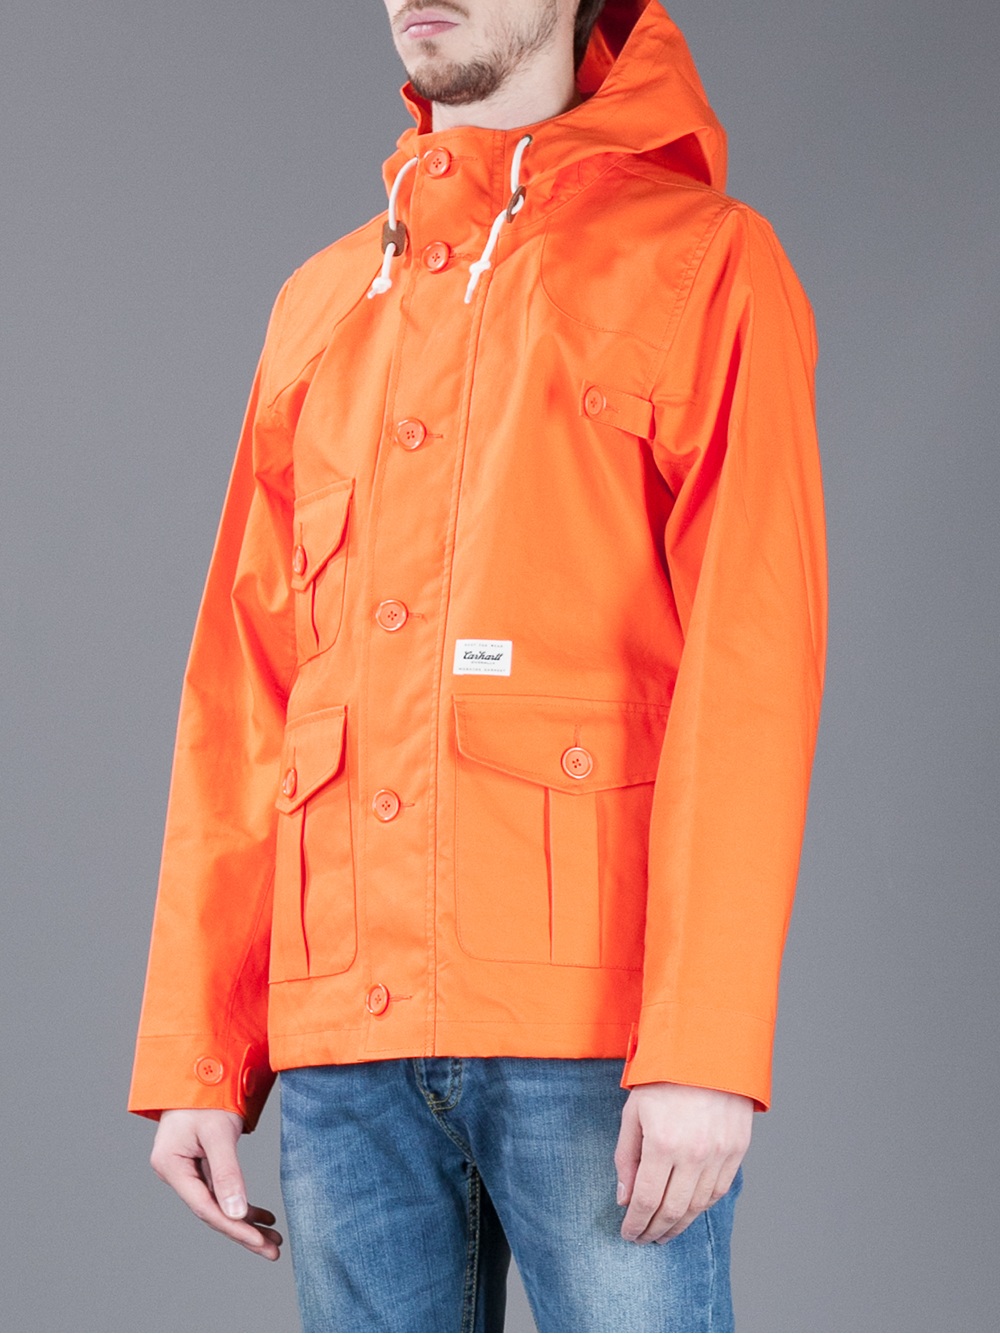 Carhartt Blast Orange Duffle Coat for Men - Lyst